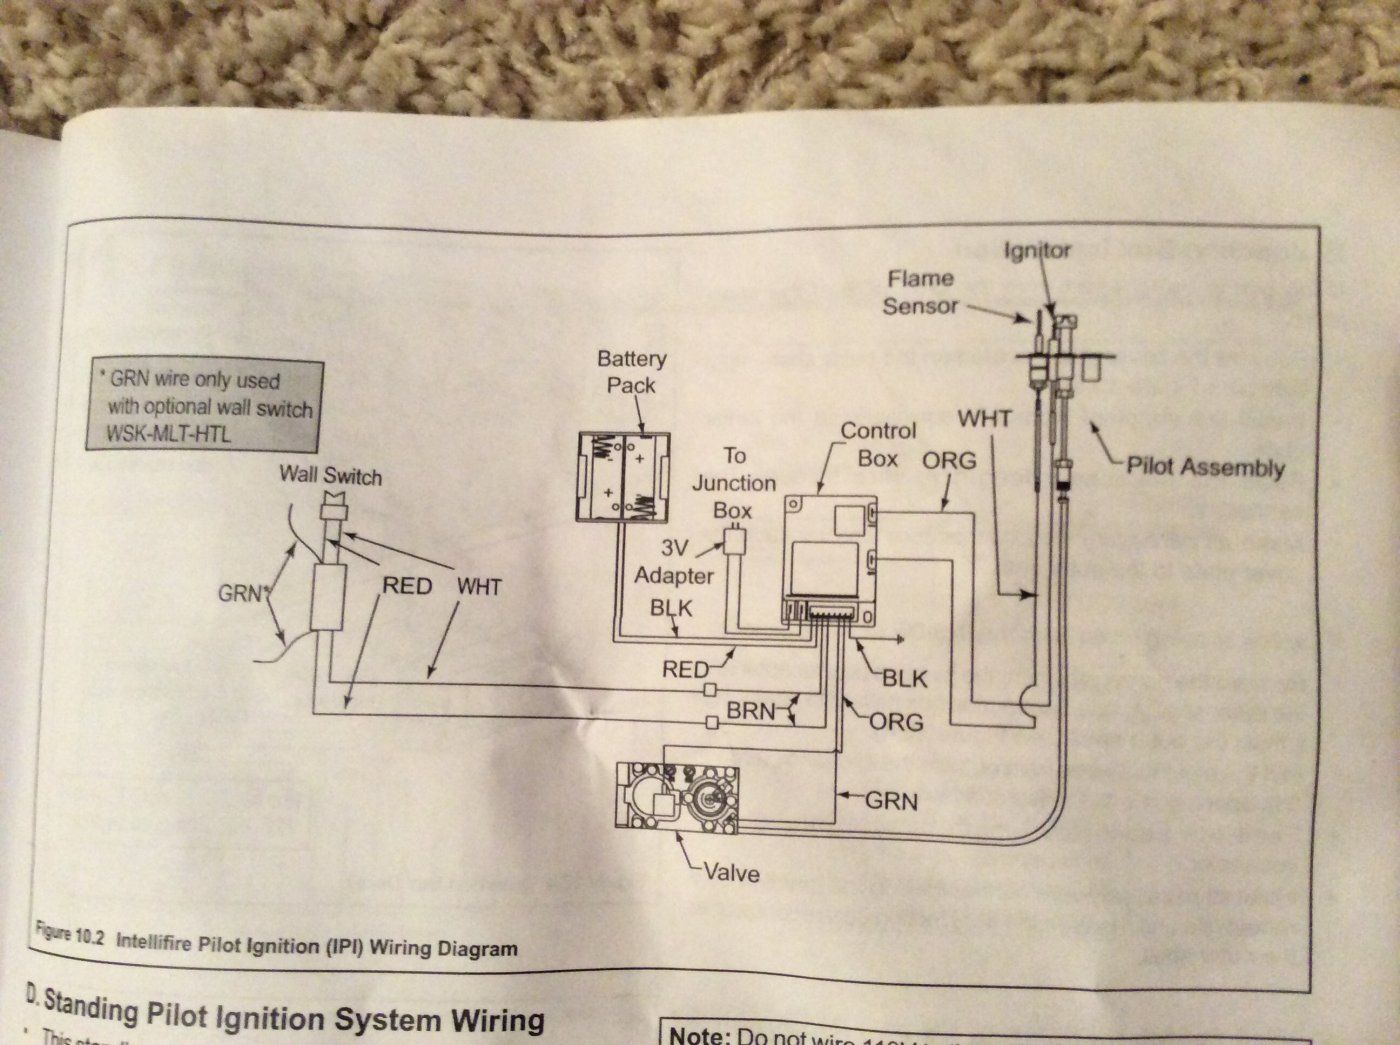 Wiring Diagram Ga Fireplace - Wiring Diagram Schemas